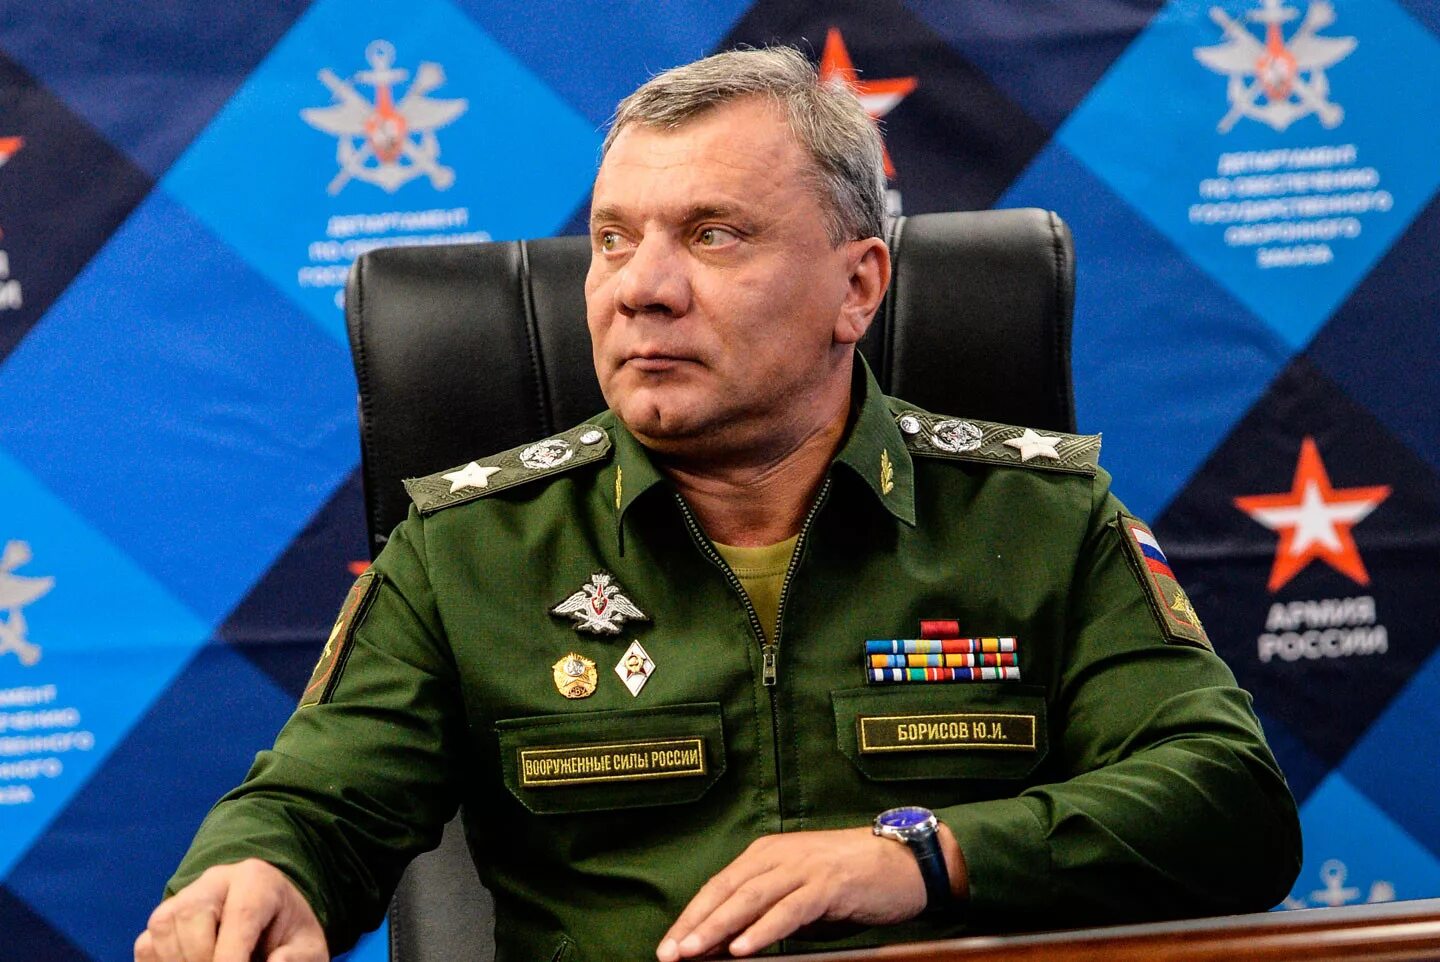 Сайт змо. Борисов заместитель министра обороны.